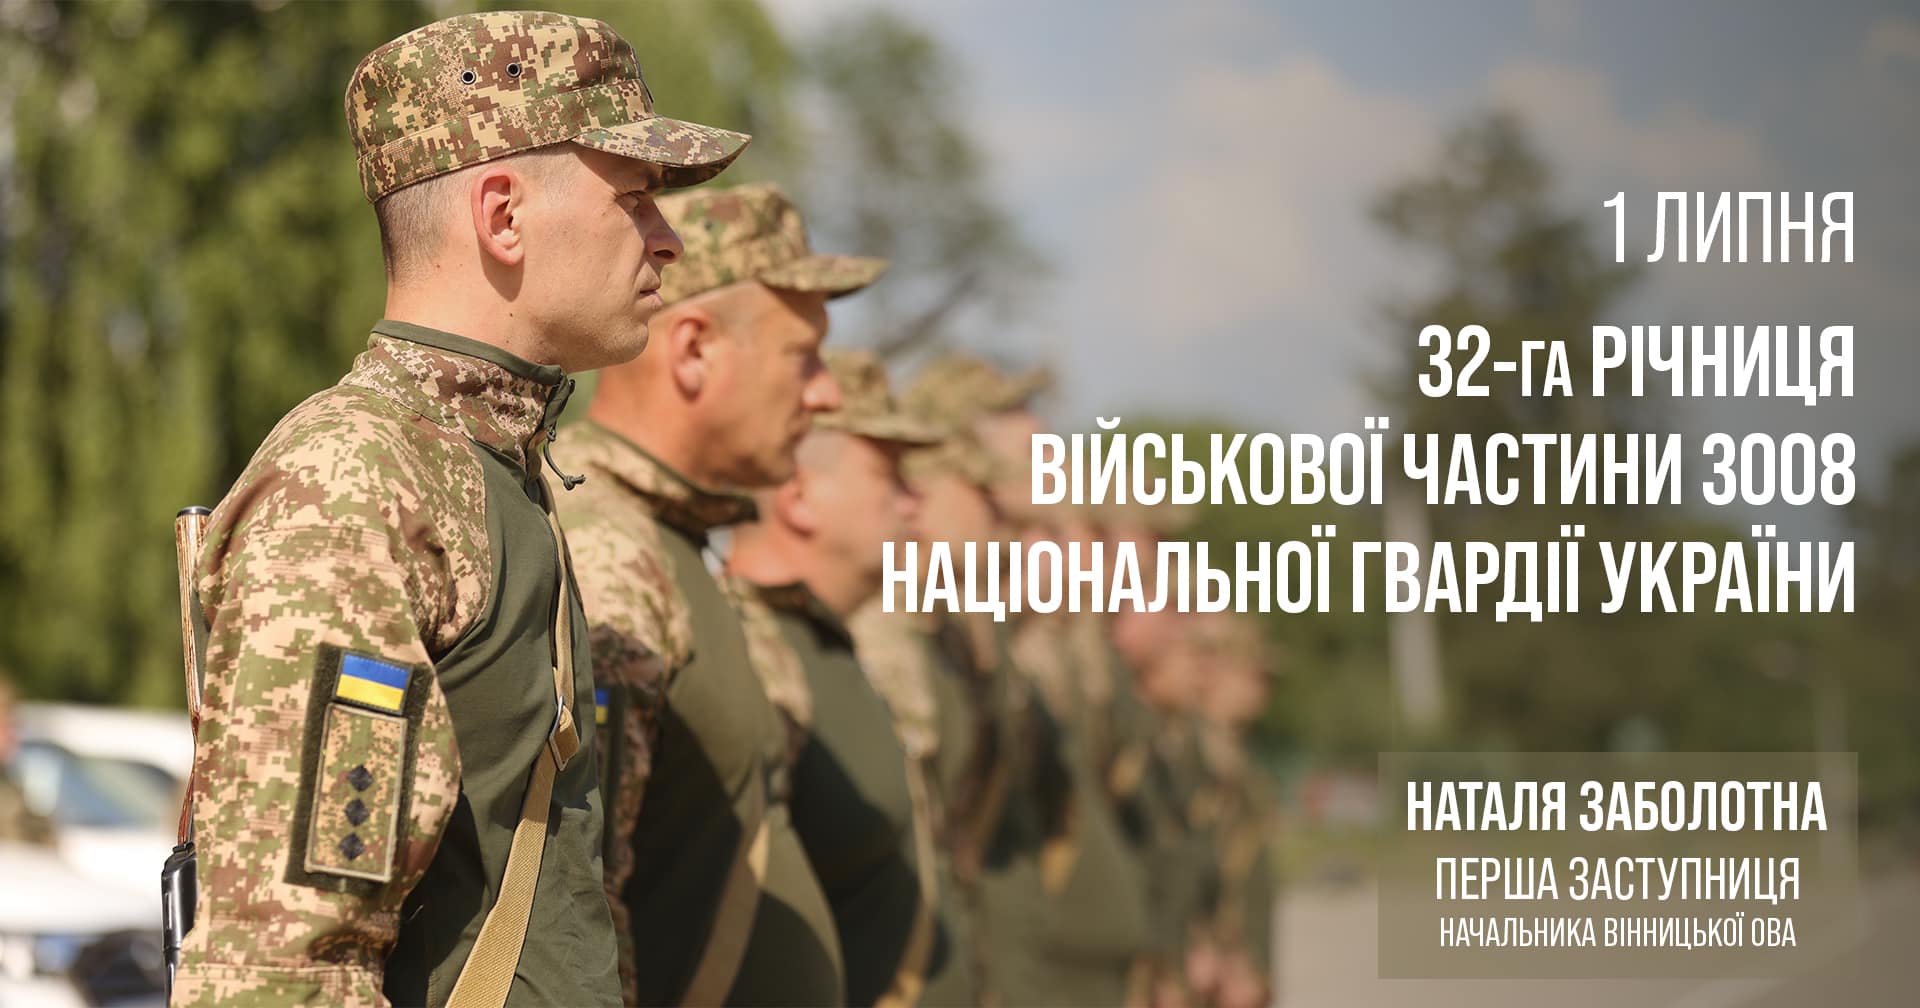 Військова частина 3008 Національної гвардії України відзначає 32 річницю з Дня створення!